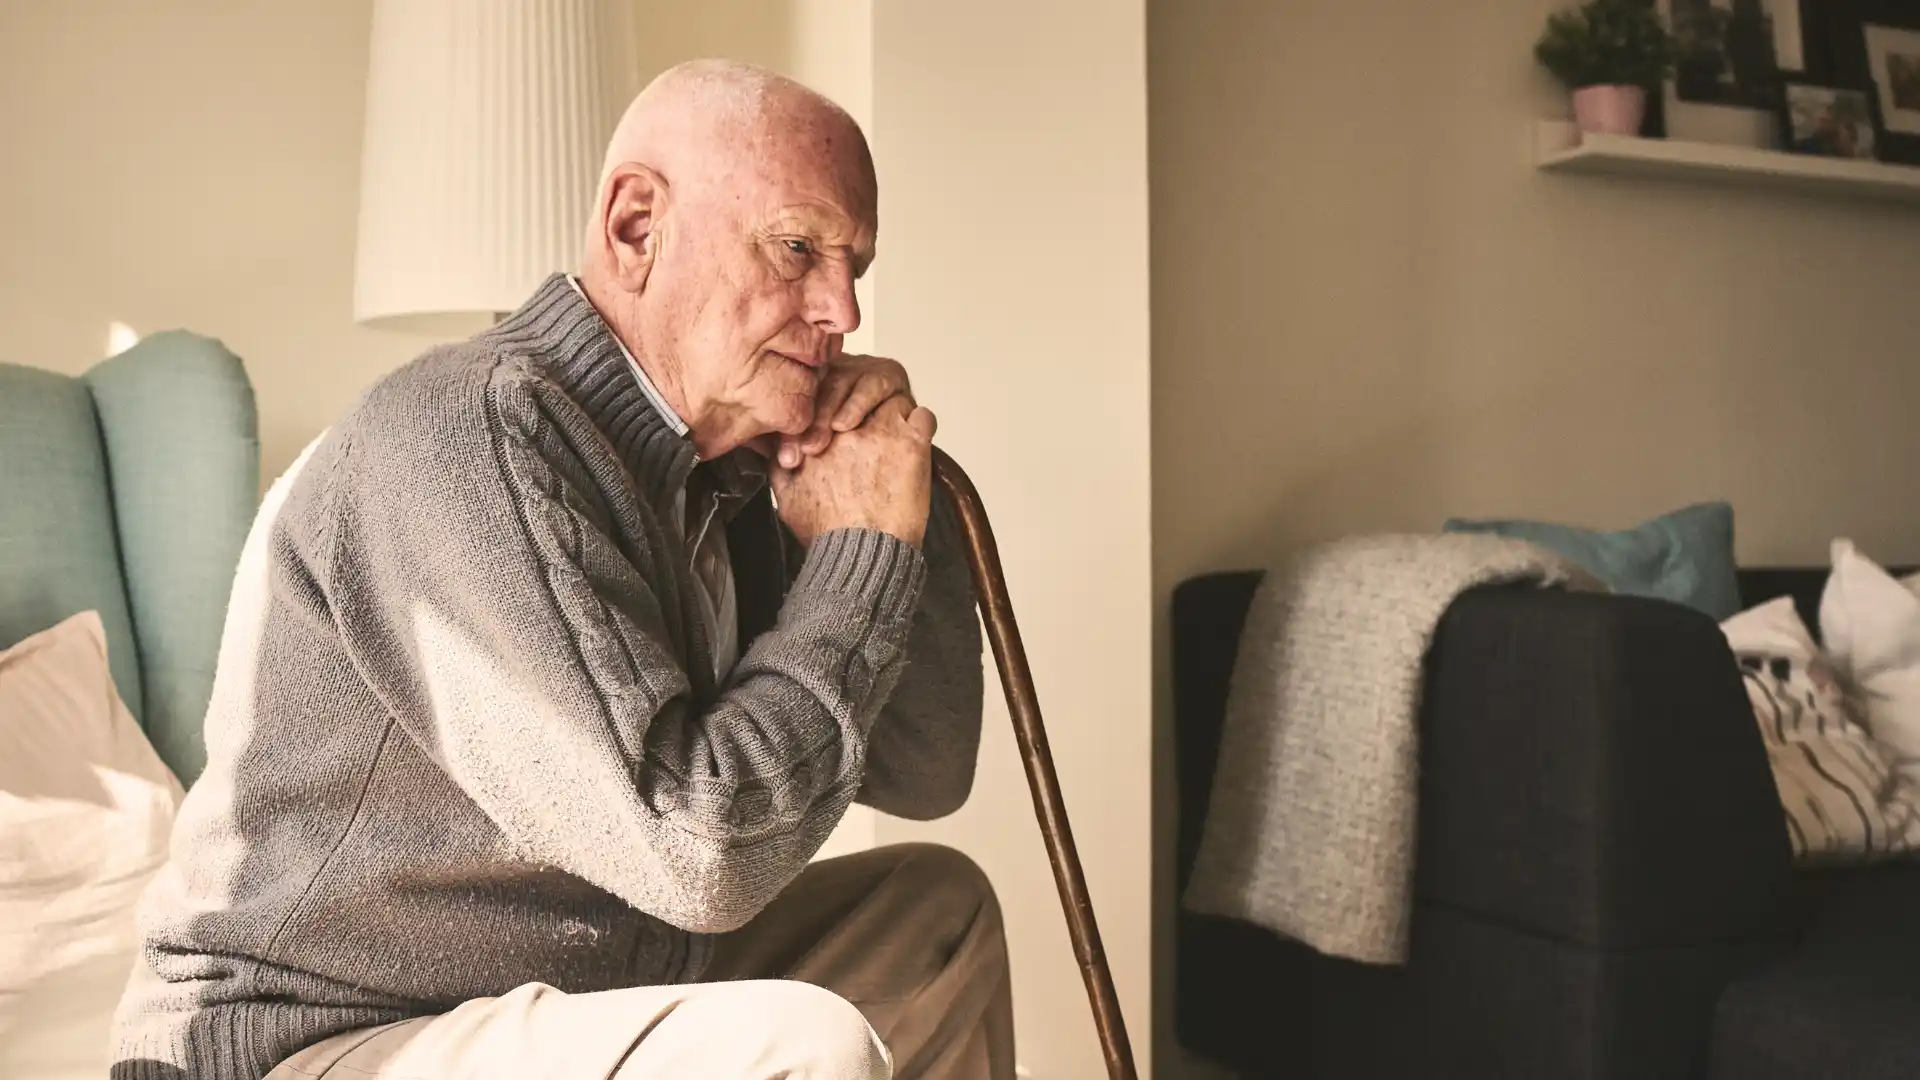 Síntomas y consecuencias de la soledad en personas mayores: Impacto en la salud y calidad de vida